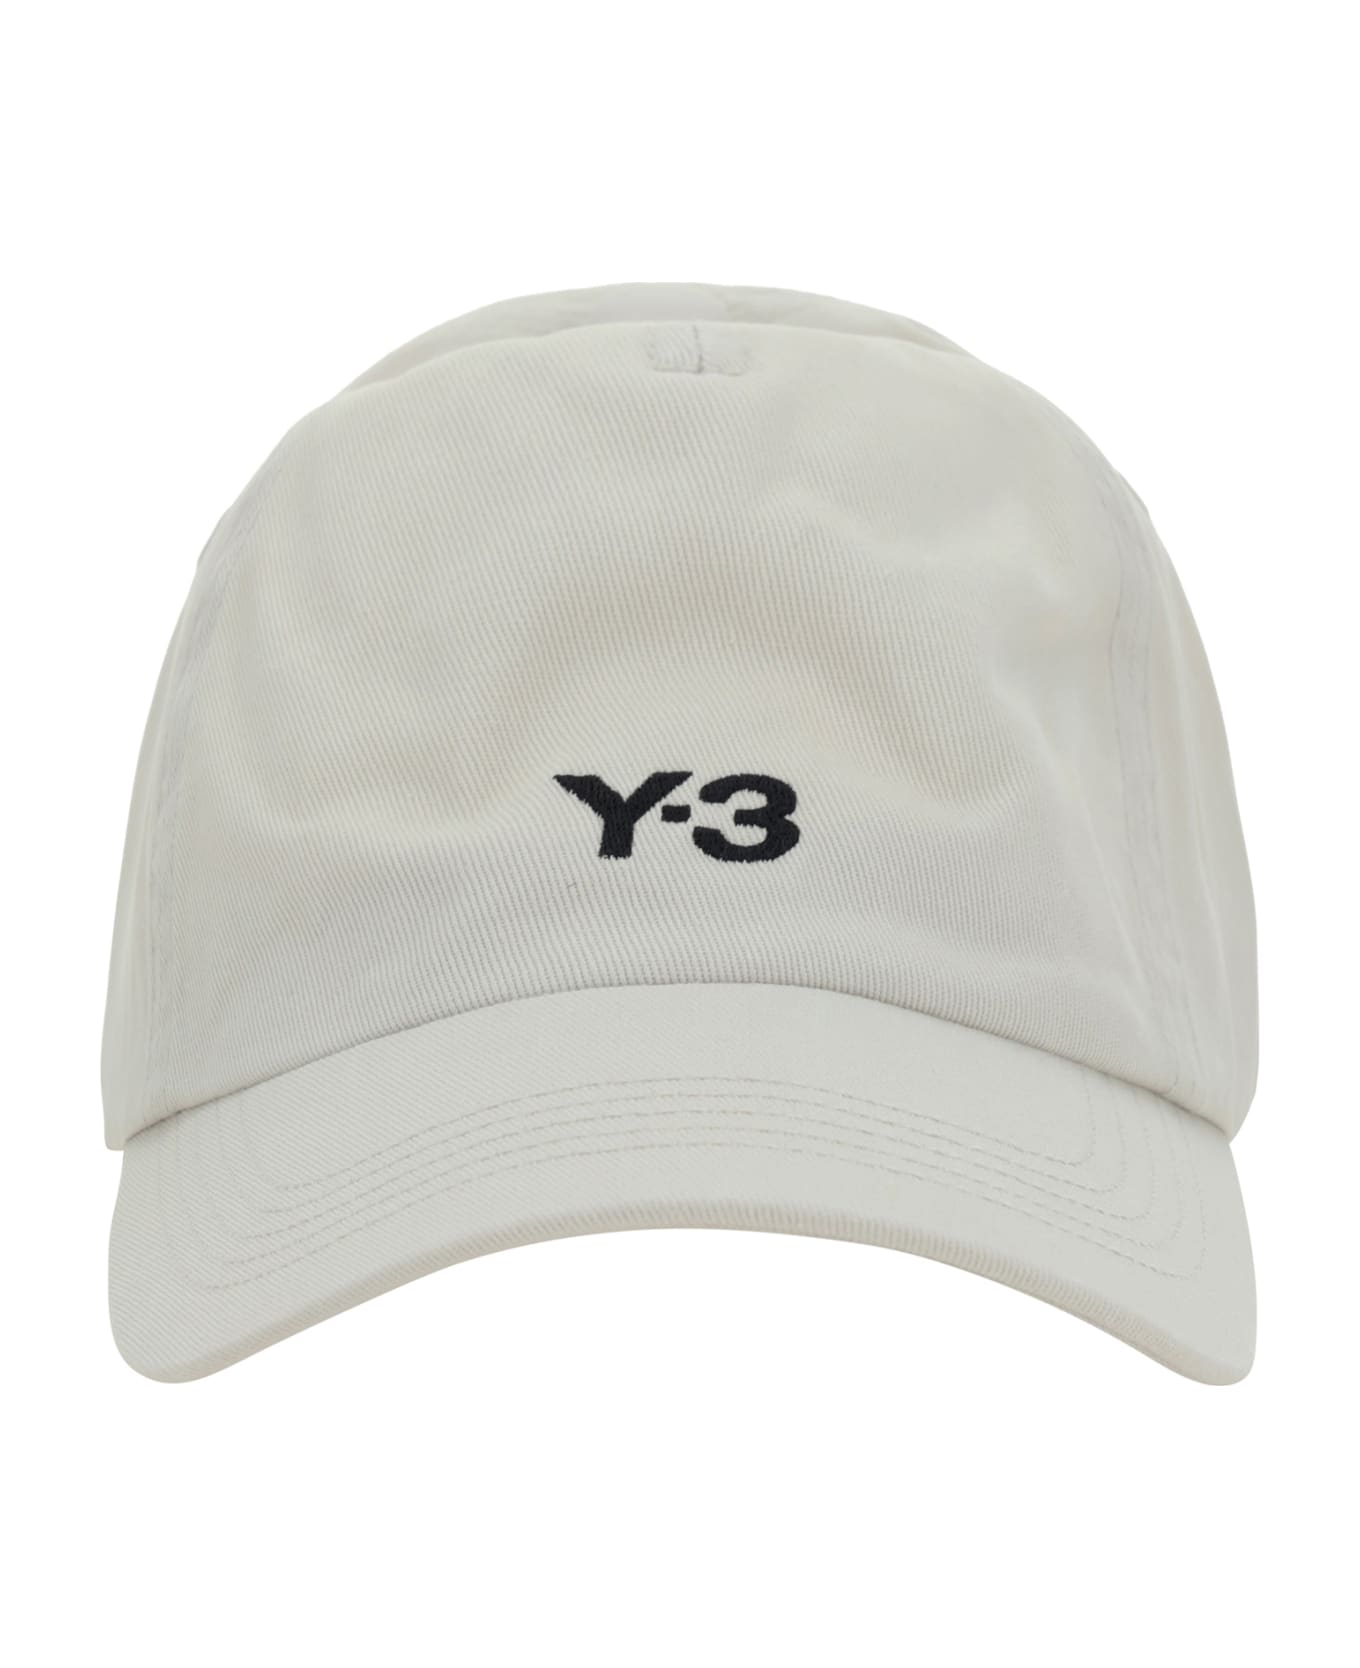 Y-3 Dad Baseball Hat - Talc 帽子